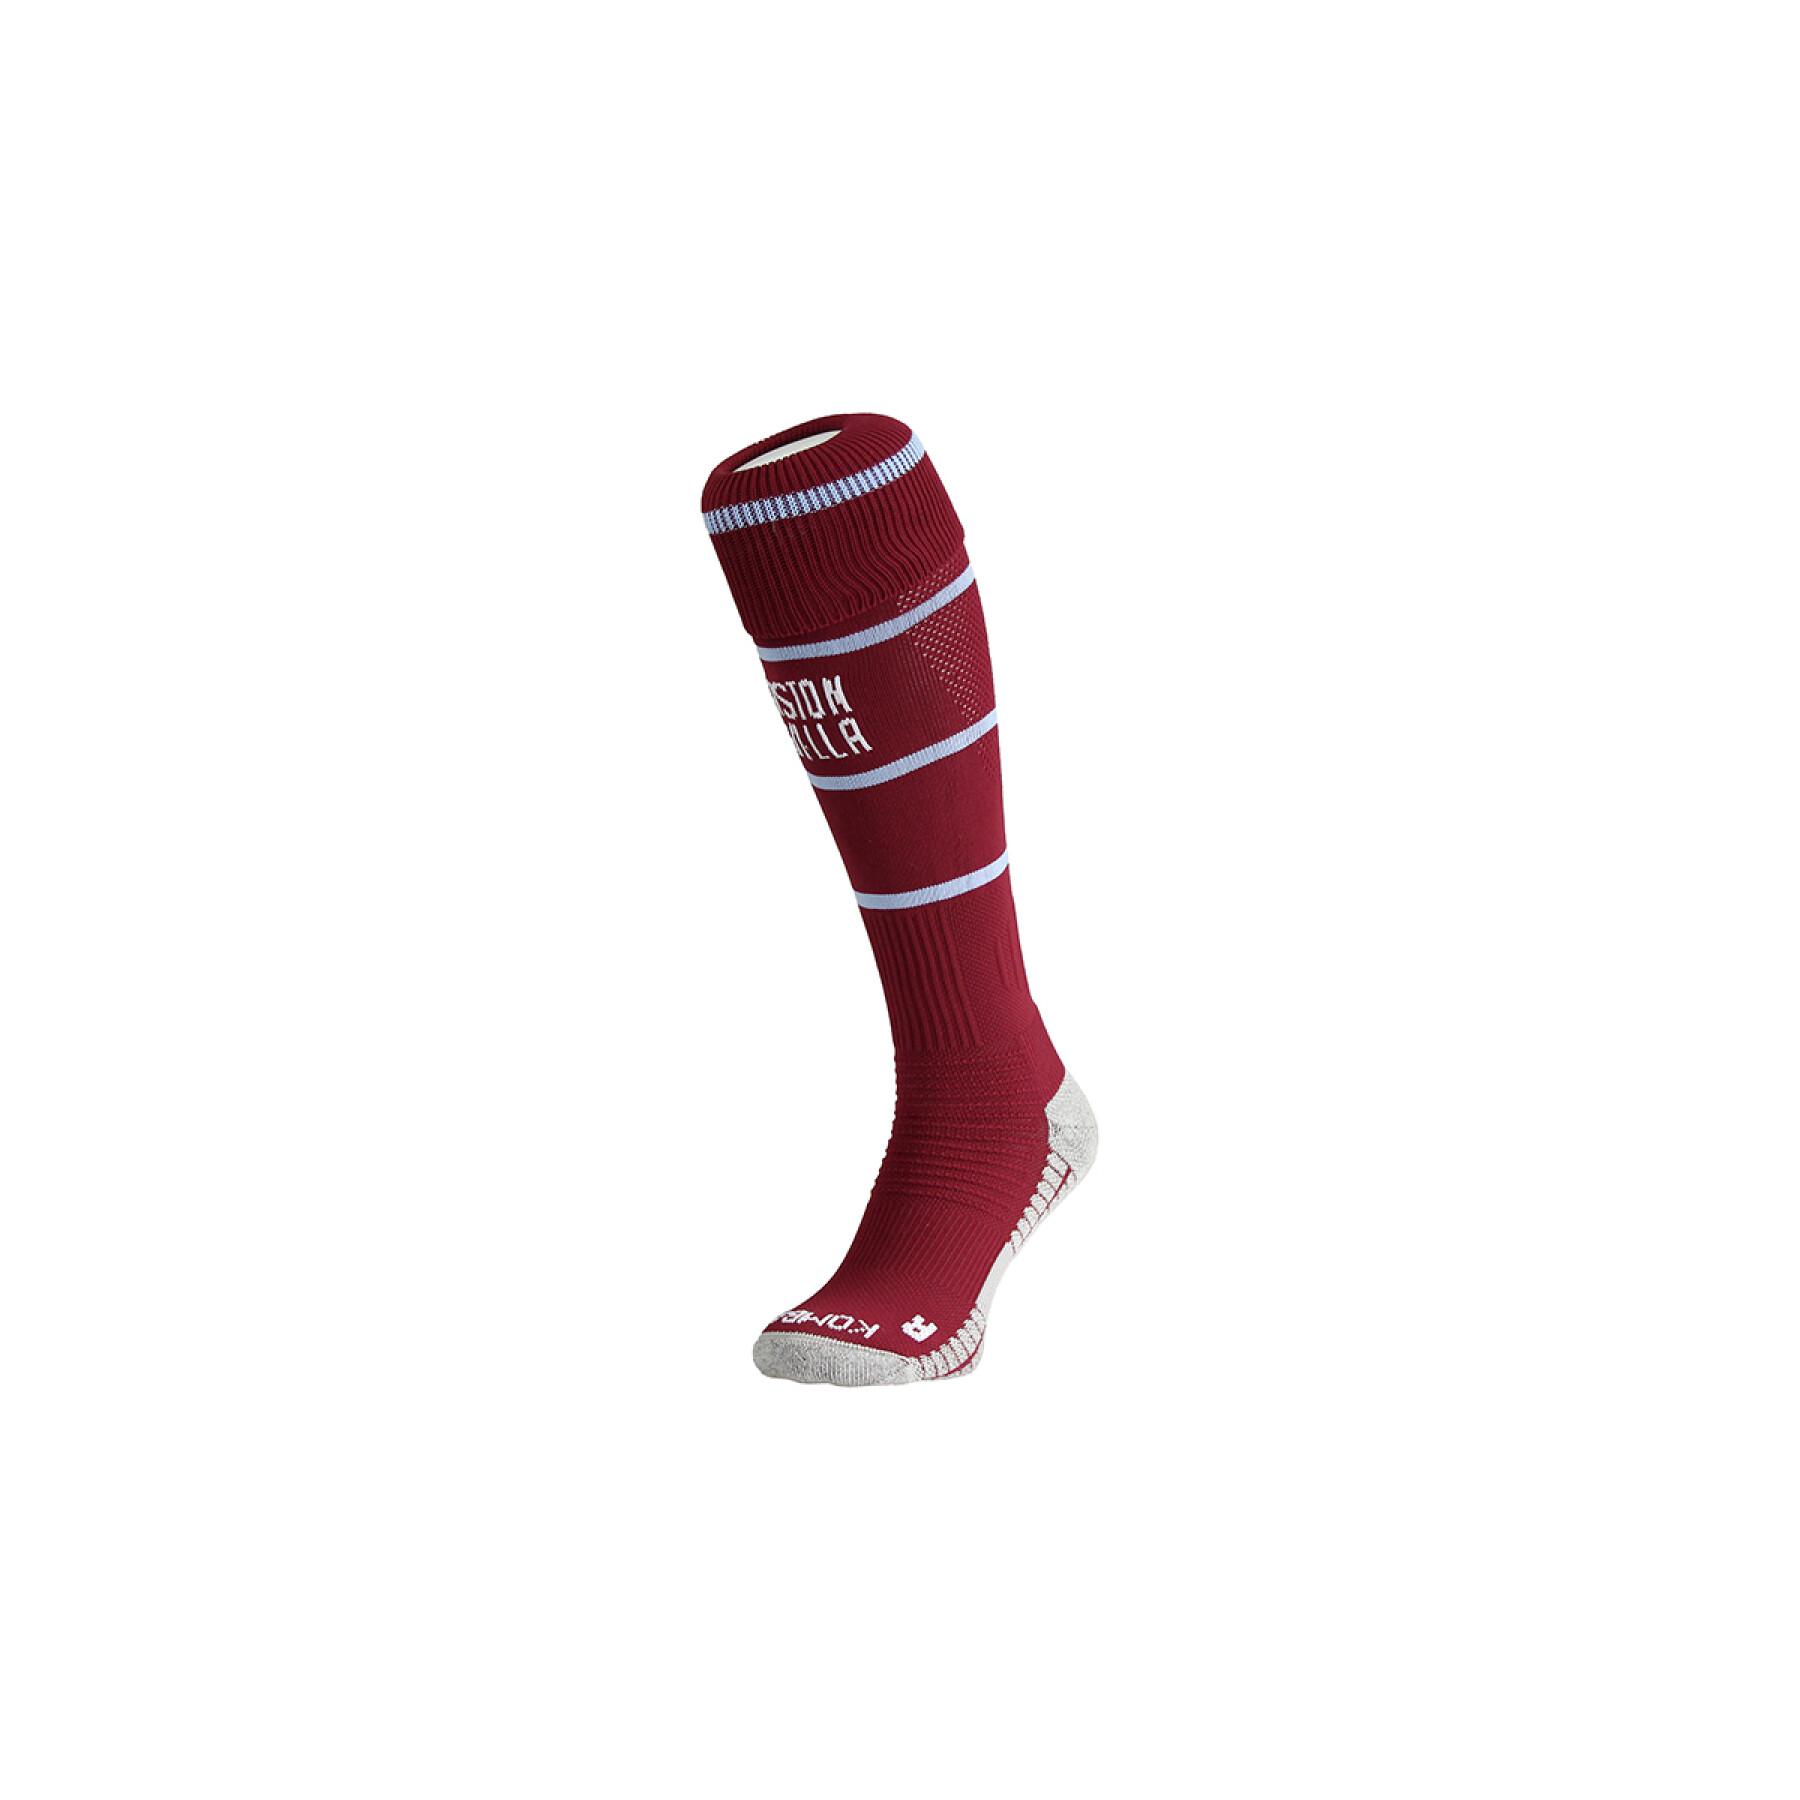 Socks Aston Villa FC 2021/22 spark pro